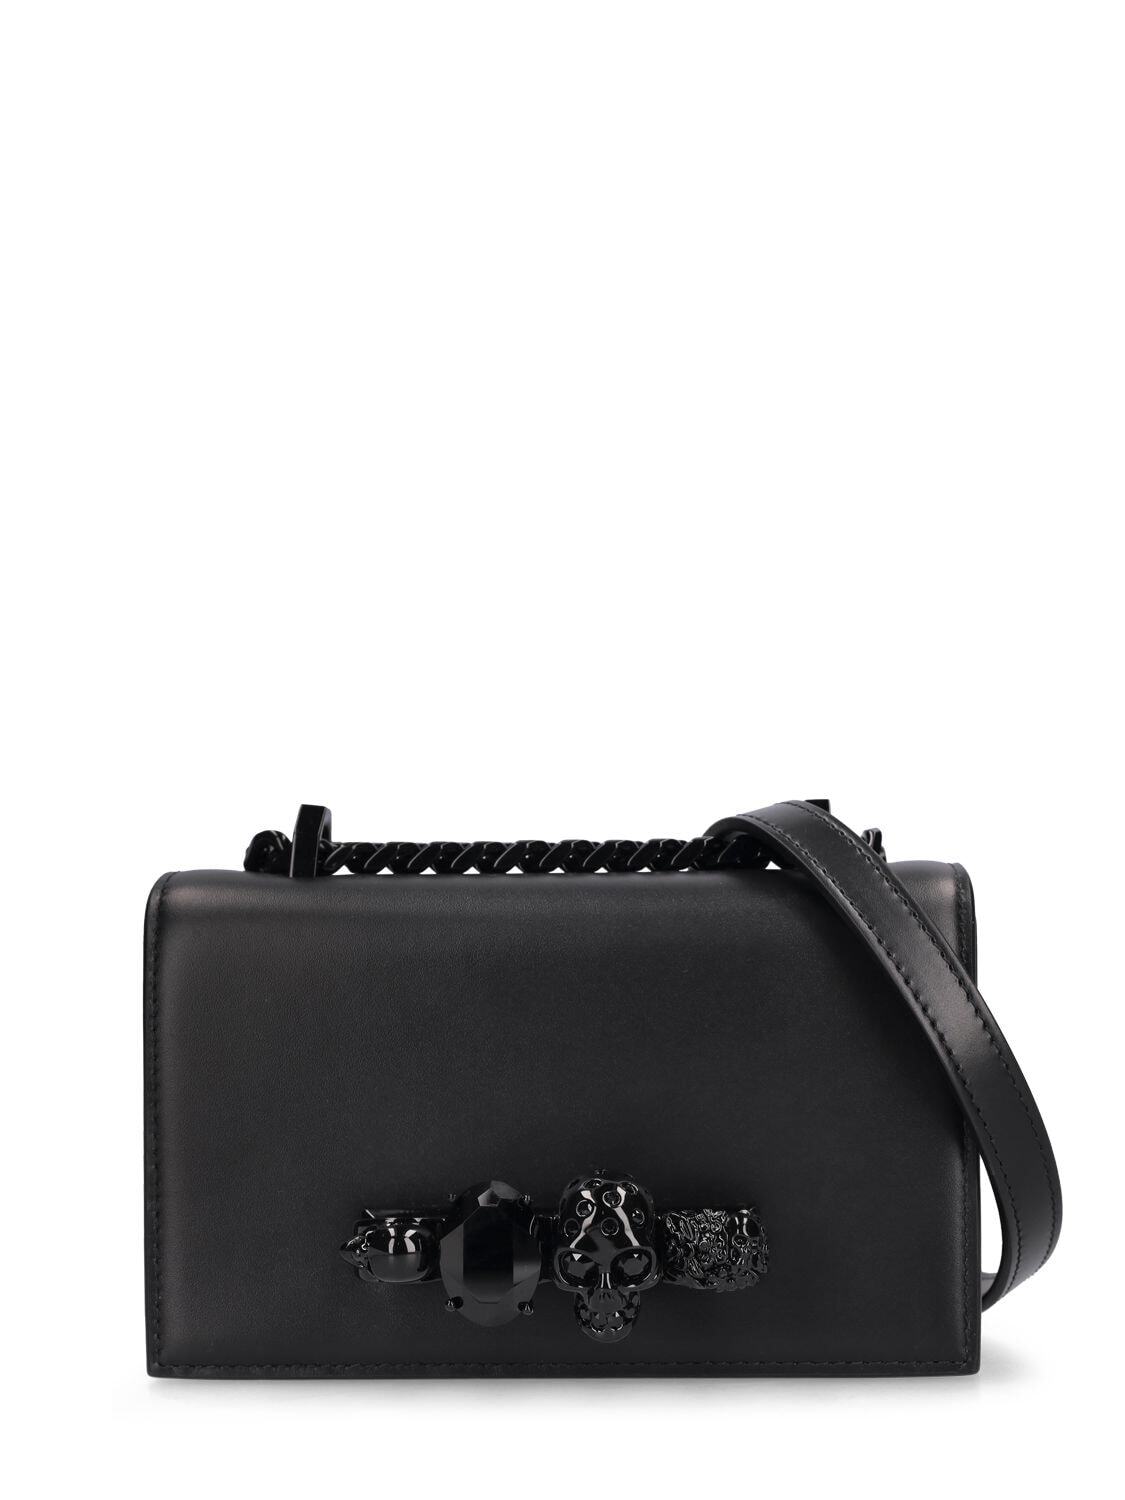 ALEXANDER MCQUEEN Mini Jewelled Satchel Leather Bag in black